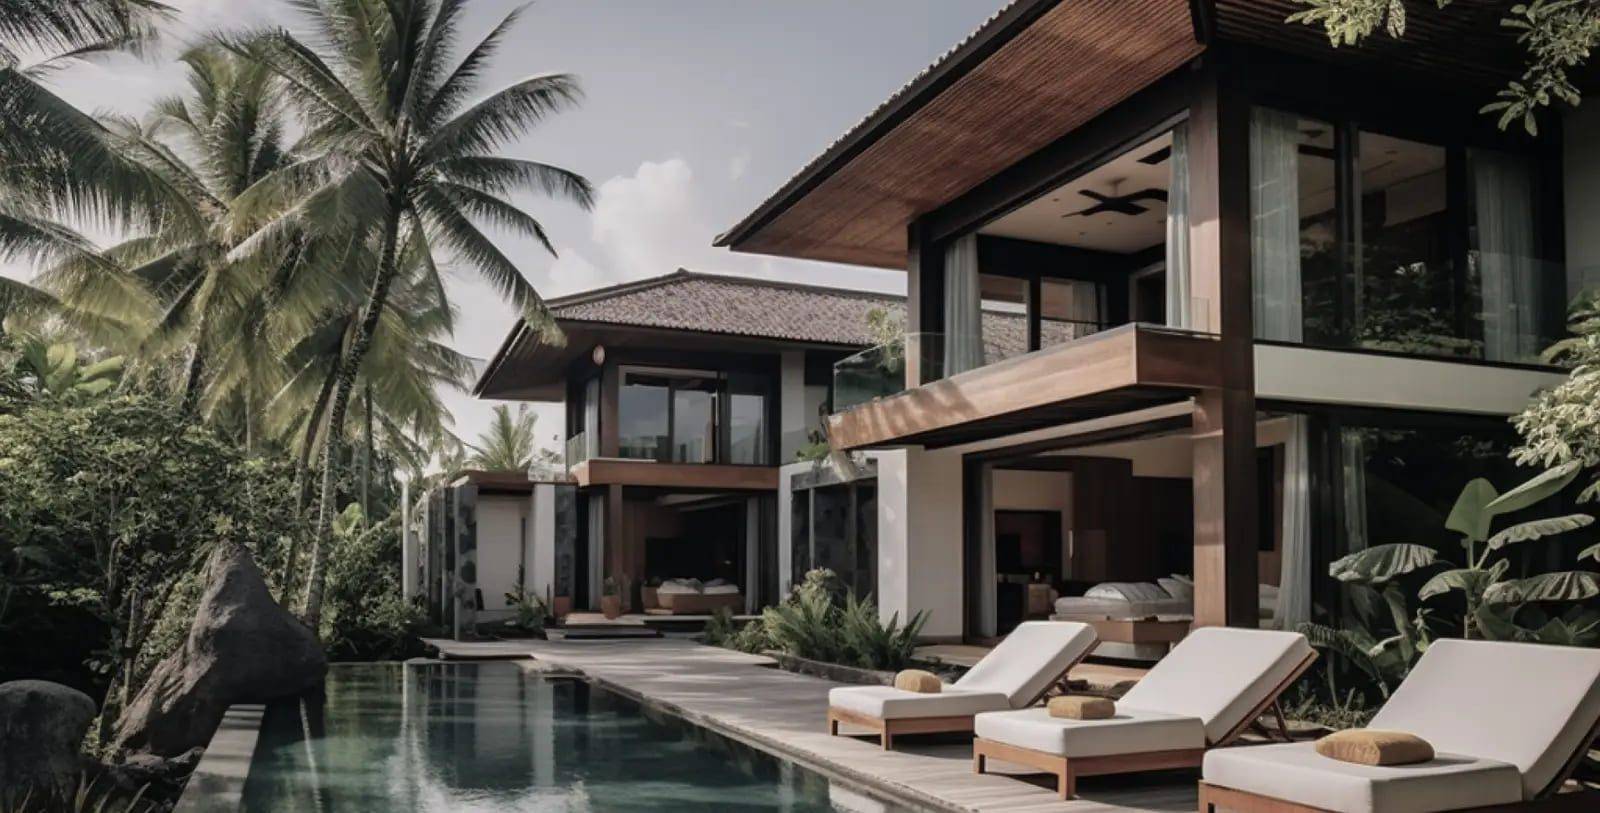 Villa de luxe moderne avec piscine privée entourée d'un feuillage tropical luxuriant, mettant en évidence l'opulence de la fiscalité immobilière en Indonésie.